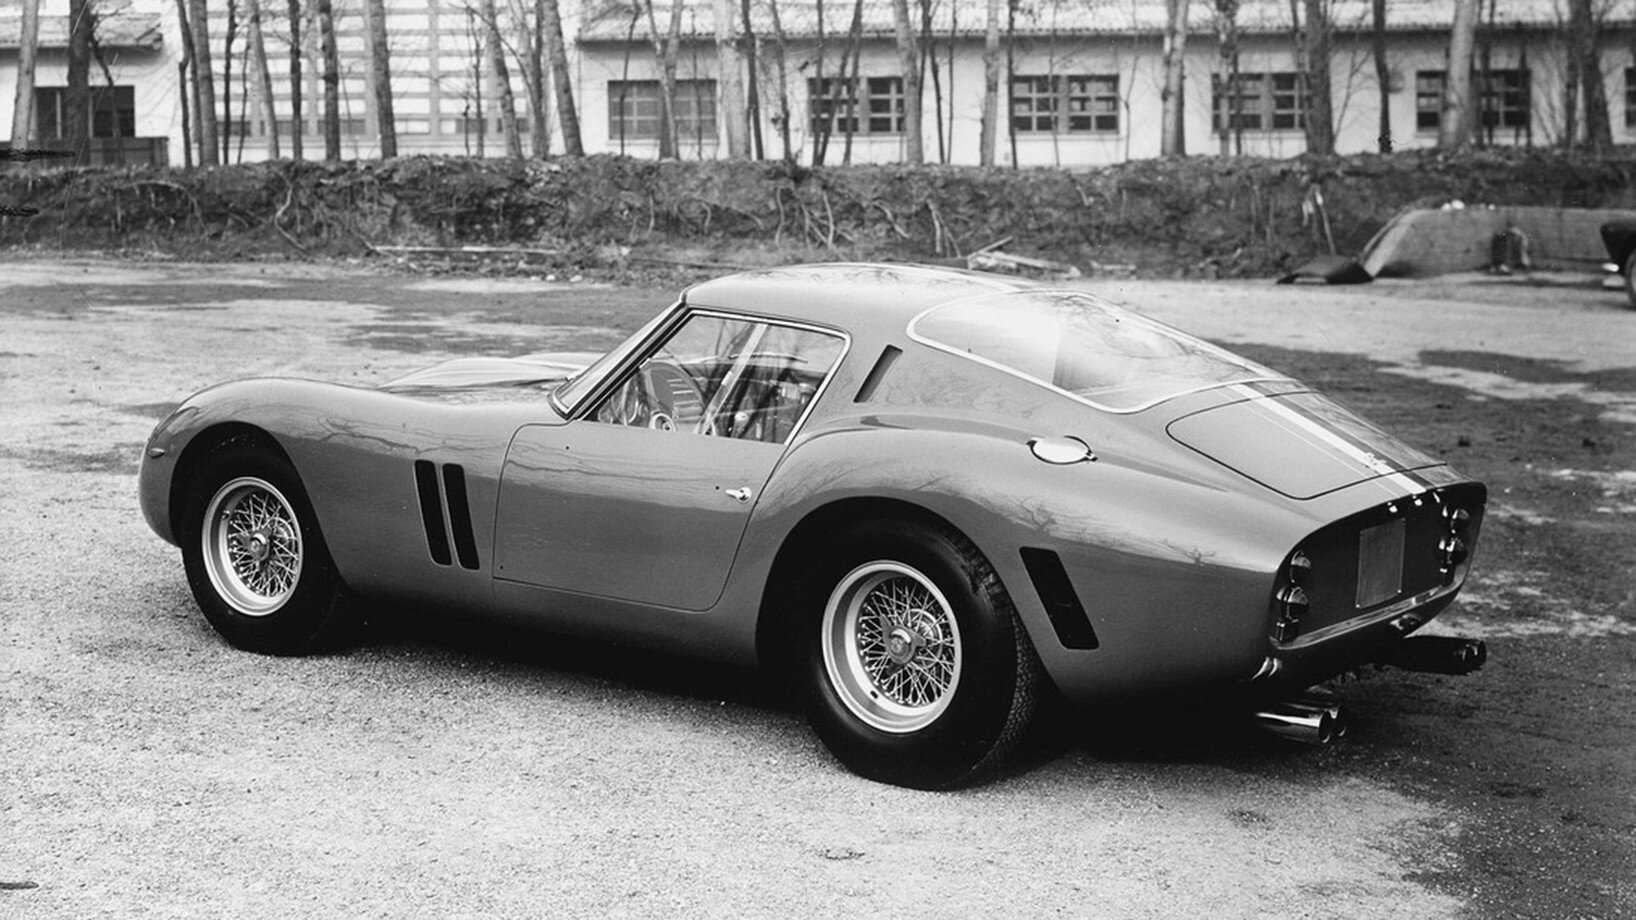 Ferrari 1962. Ferrari 250 GTO 1962. Ferrari 250 GTO. Ferrari 250 GTO 1963. Ferrari 250 GTO 1961.